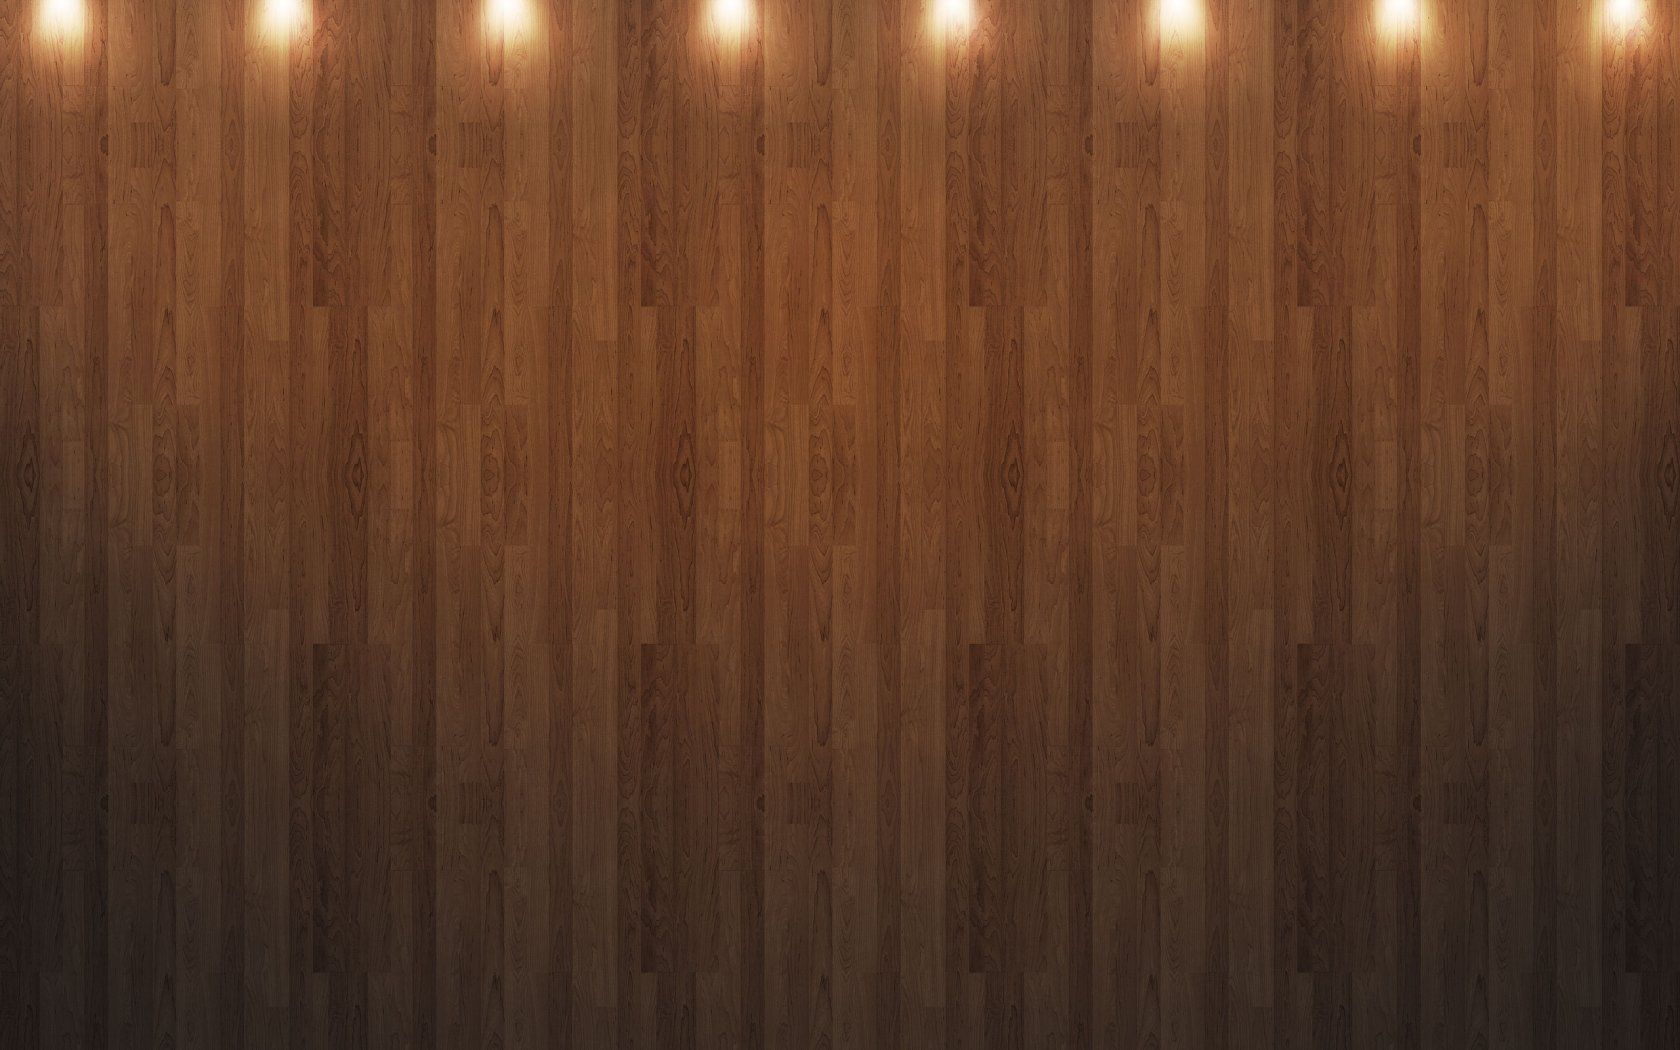 Wood Computer Wallpapers, Desktop Backgrounds | 1680x1050 | ID:81672